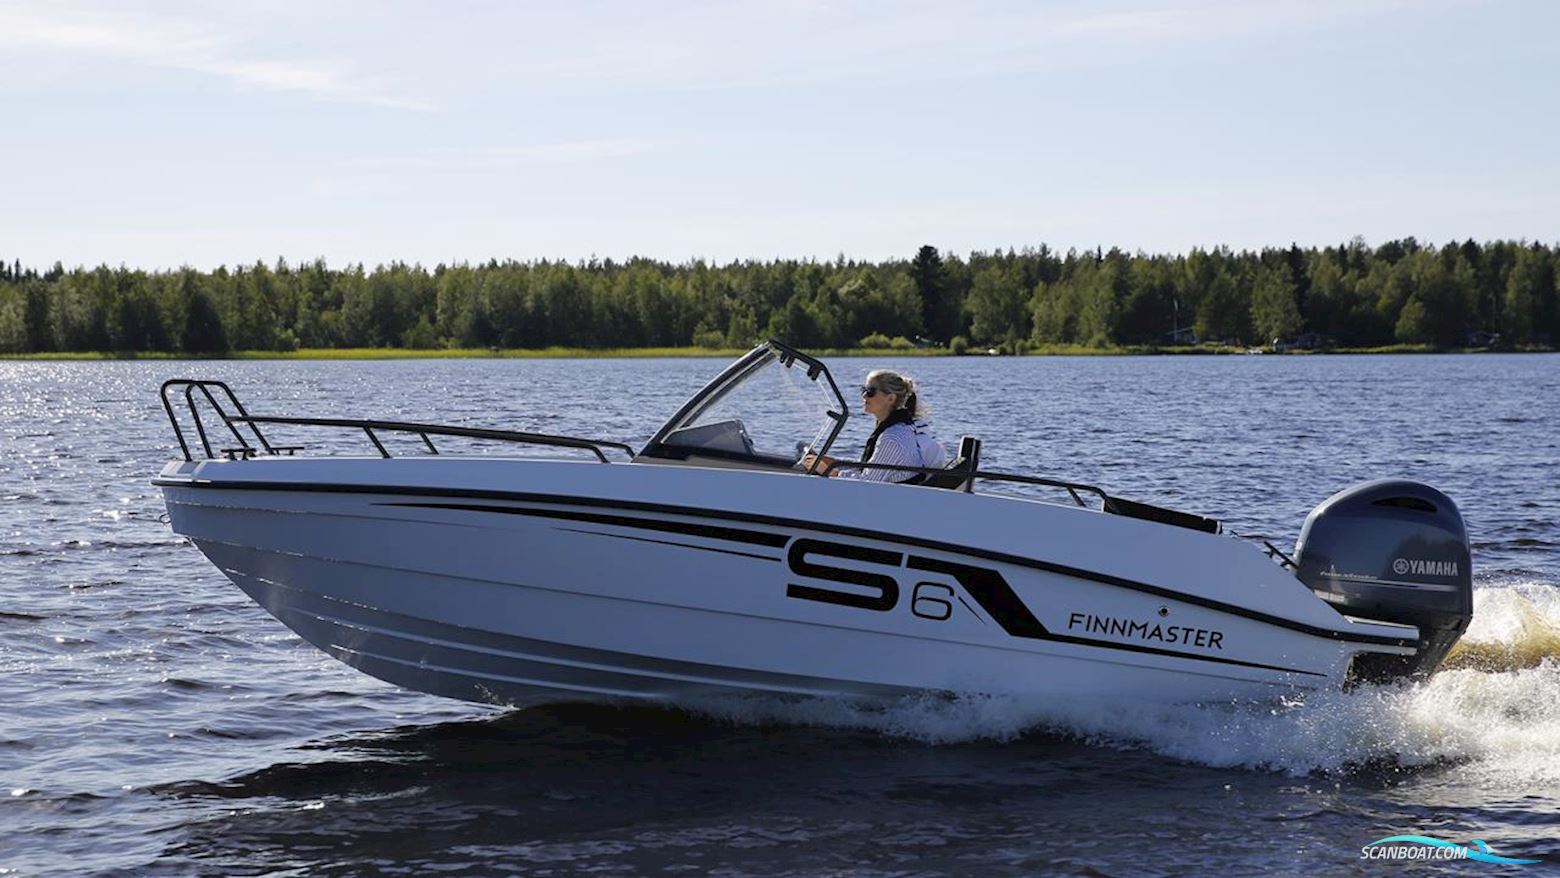 FINNMASTER S6 Motorbåt 2023, med Yamaha motor, Sverige